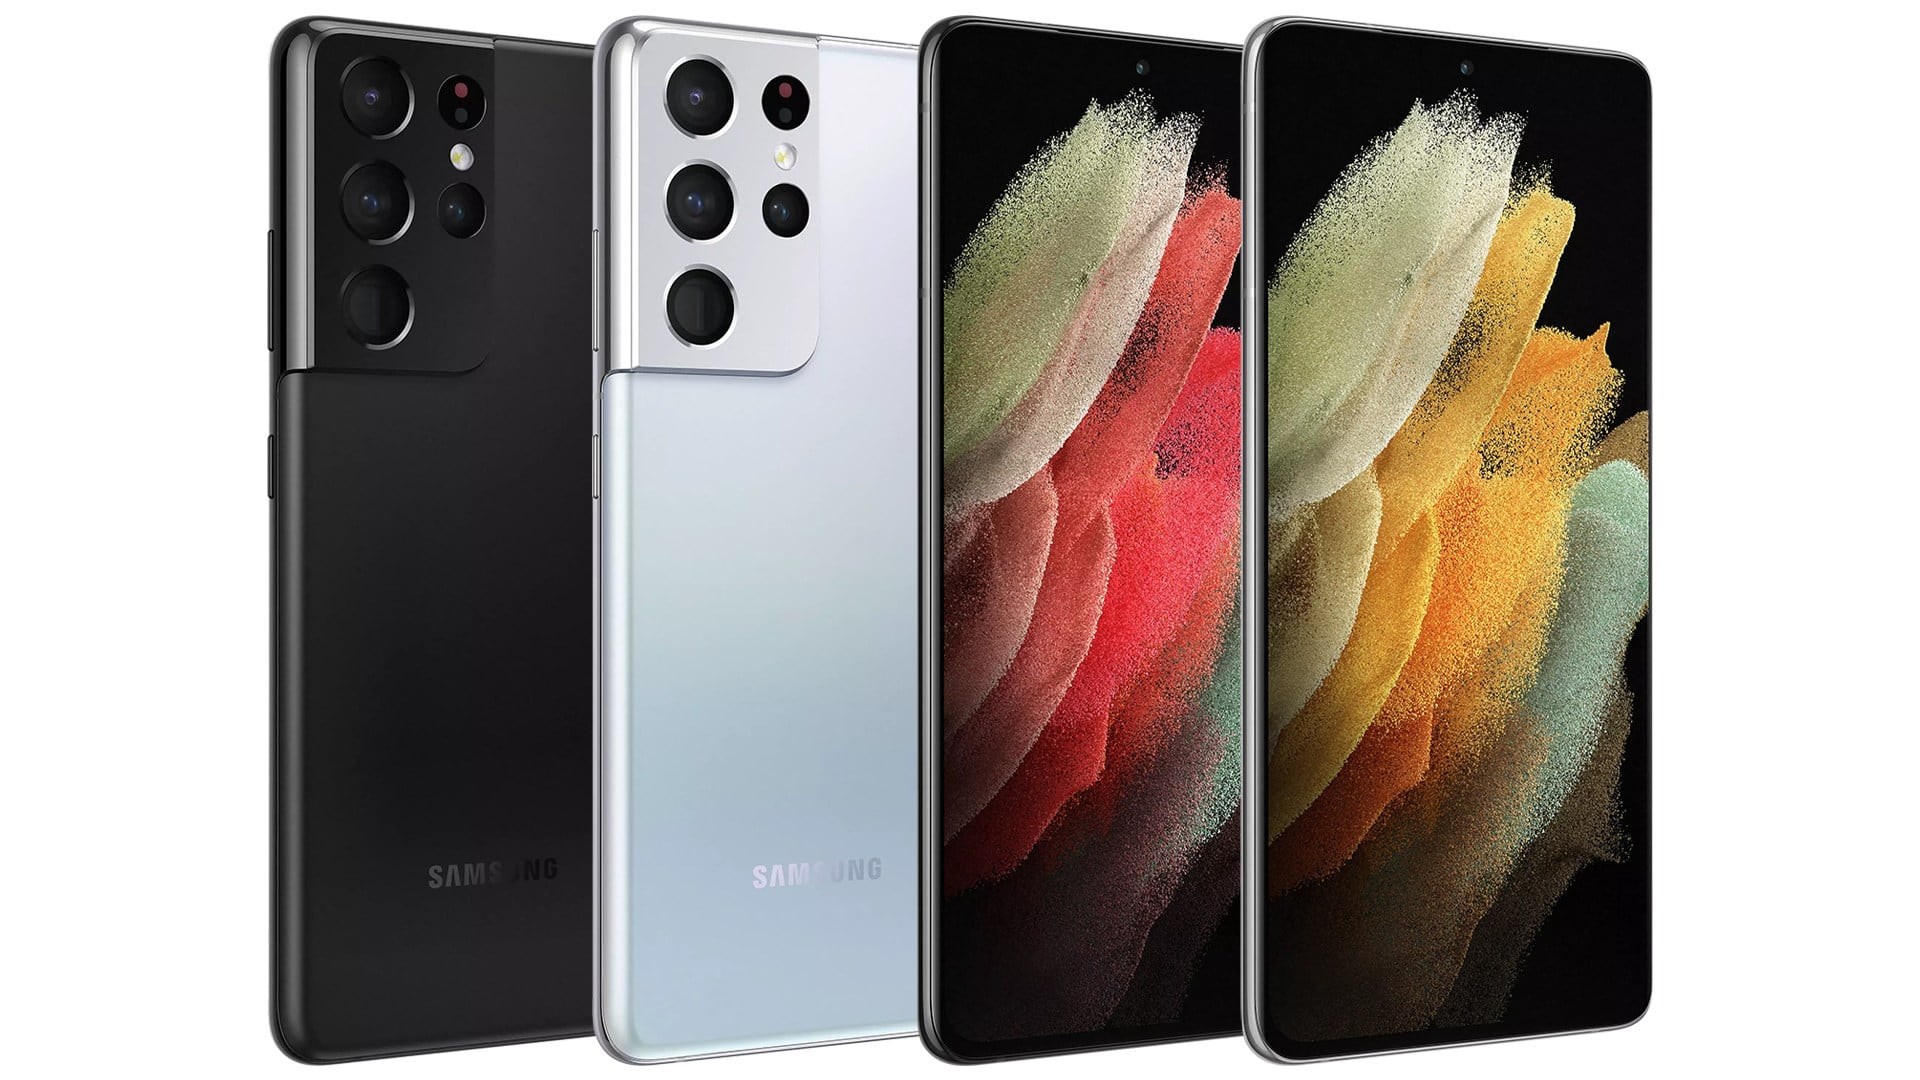 Samsung Galaxy S21 serisinin kamera özellikleri detaylandı [İnfografik]